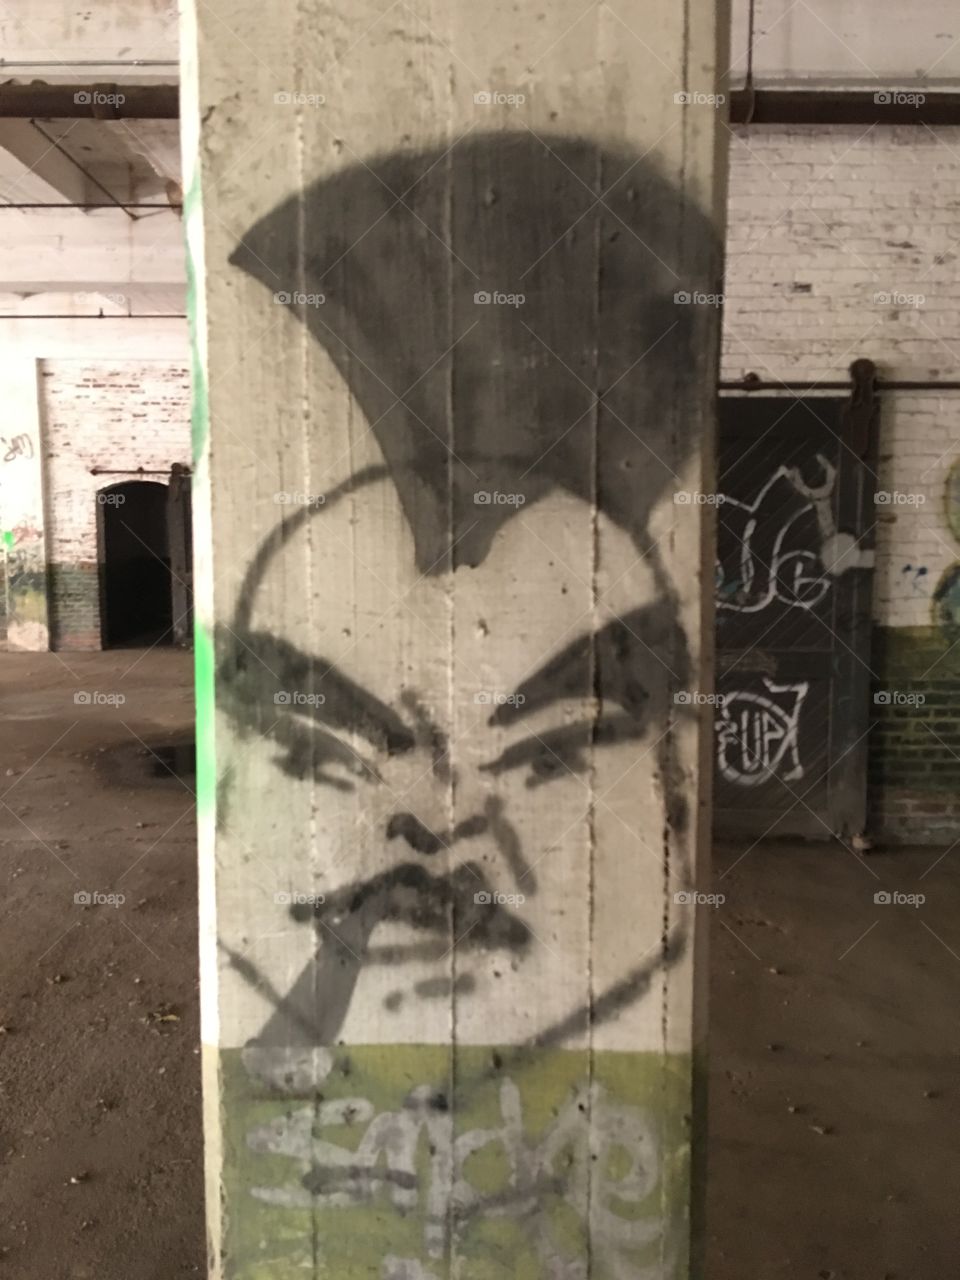 Mohawk graffiti 